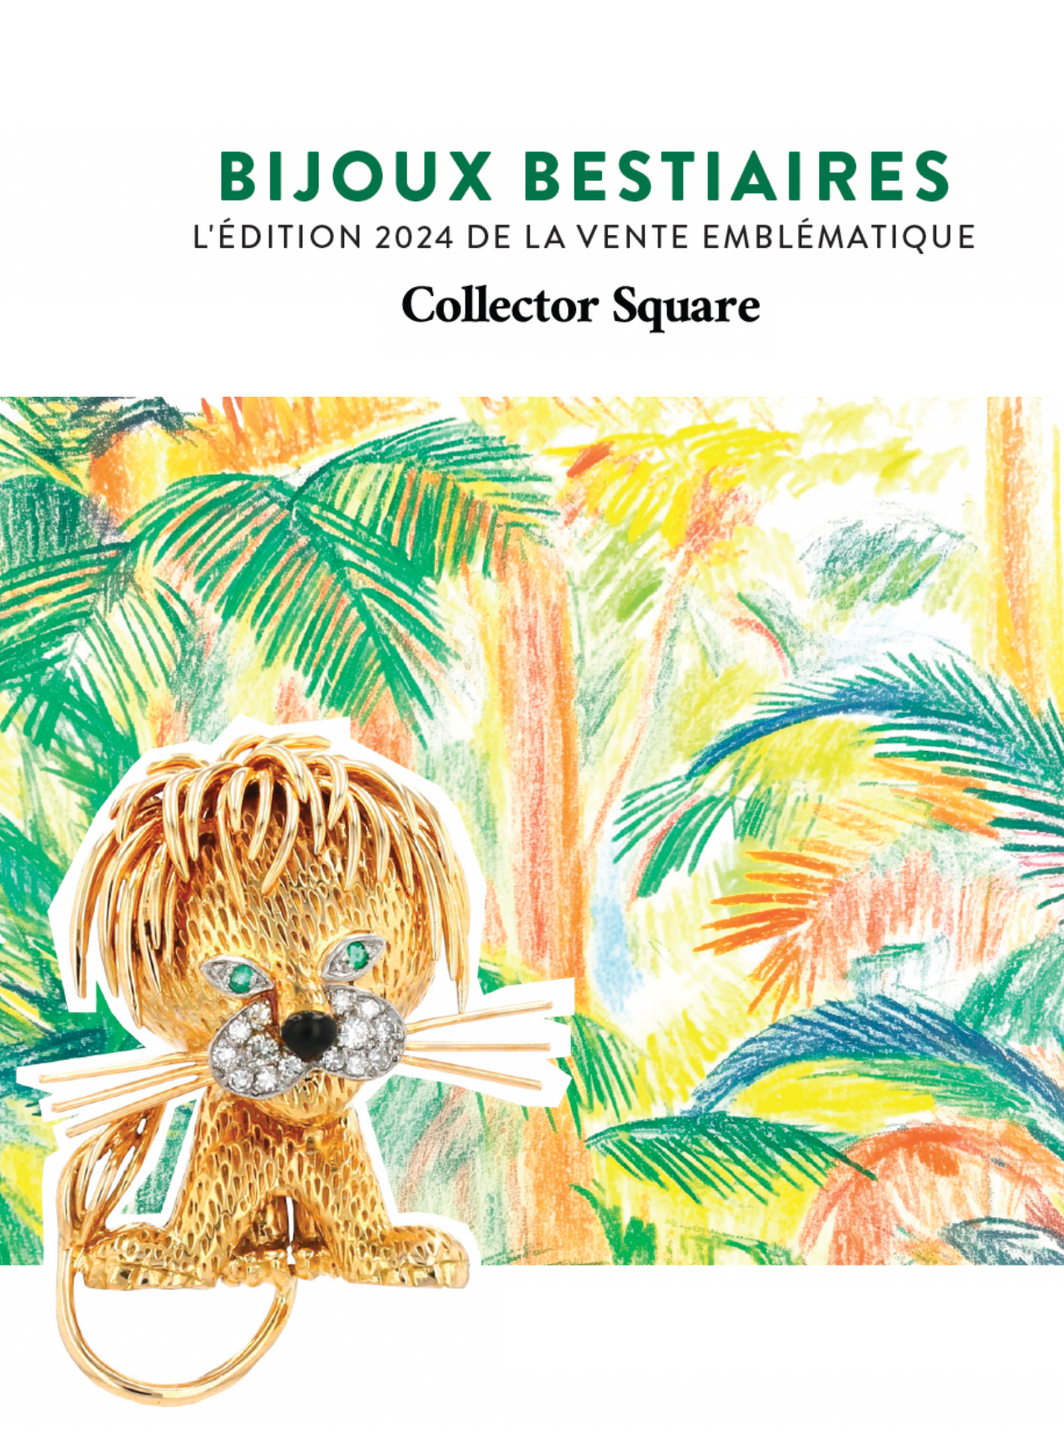 Collector Square : la vente emblématique "Bijoux Bestiaires" 2024